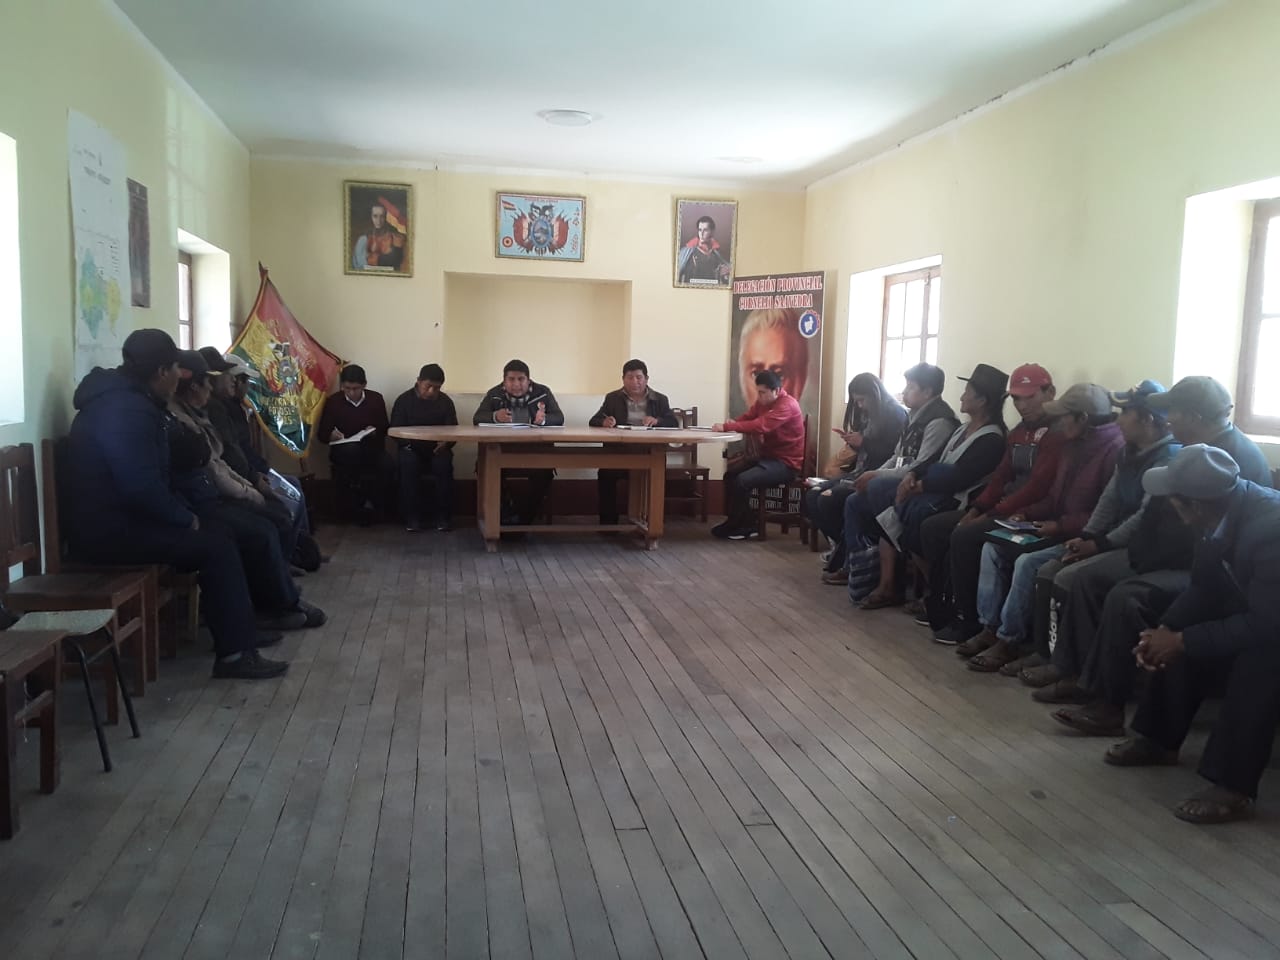 Delegación defensorial en potosí, participa de mesa de dialogo en la comunidad de Quivi Quivi.